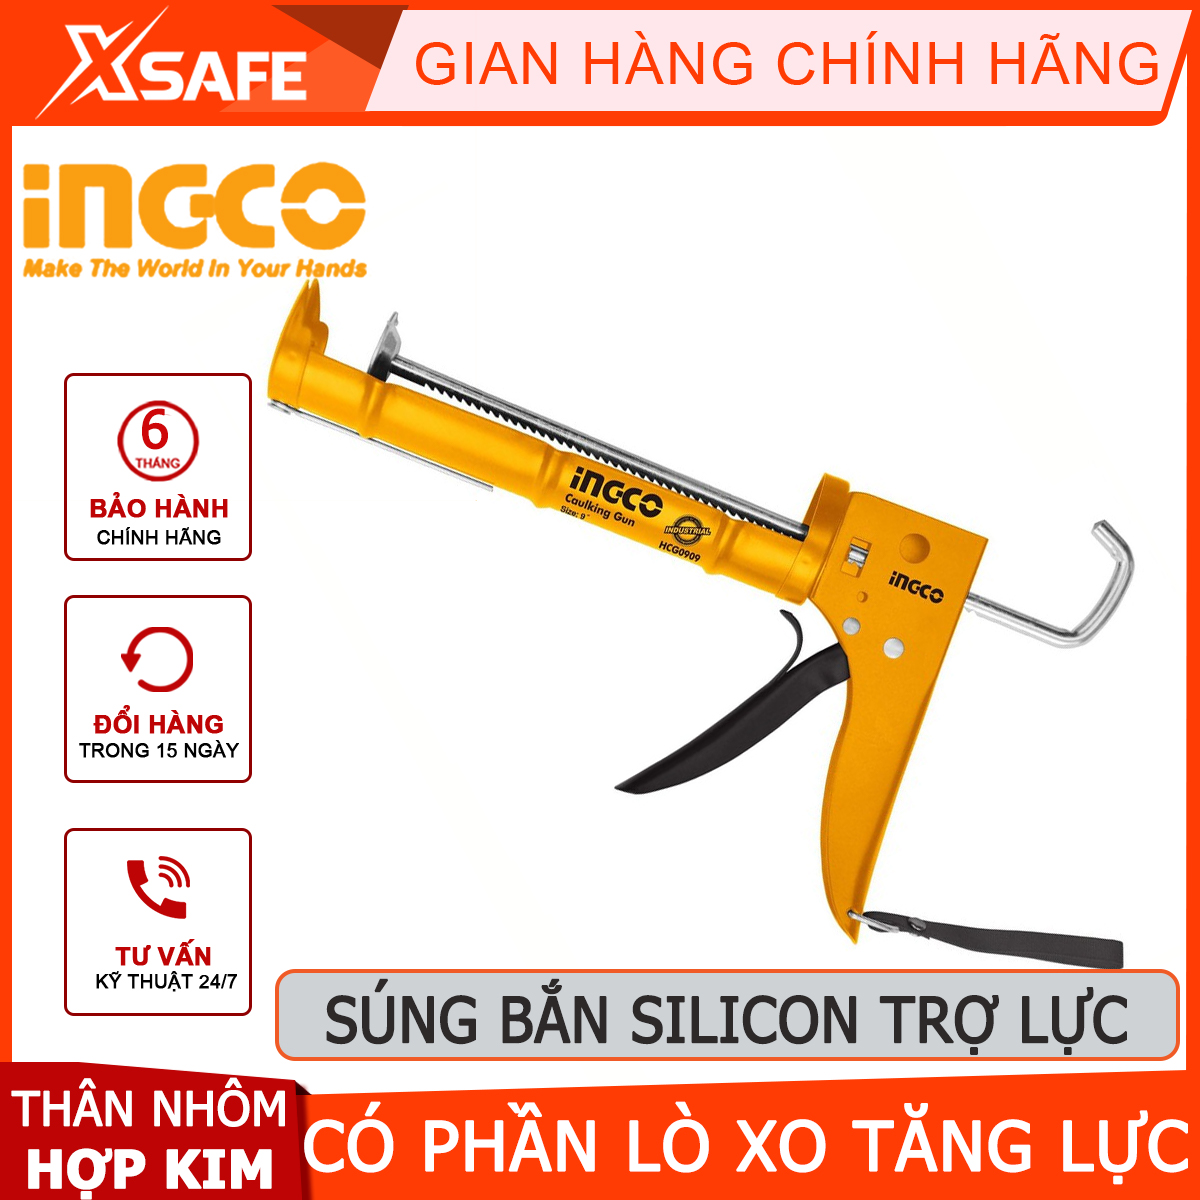 Dụng cụ bơm silicon có trợ lực INGCO HCG0909 | công cụ bơm keo kích thước 9" (225mm) thân nhôm hợp kim bơm keo chống thấm sàn mái bê tông, công trình